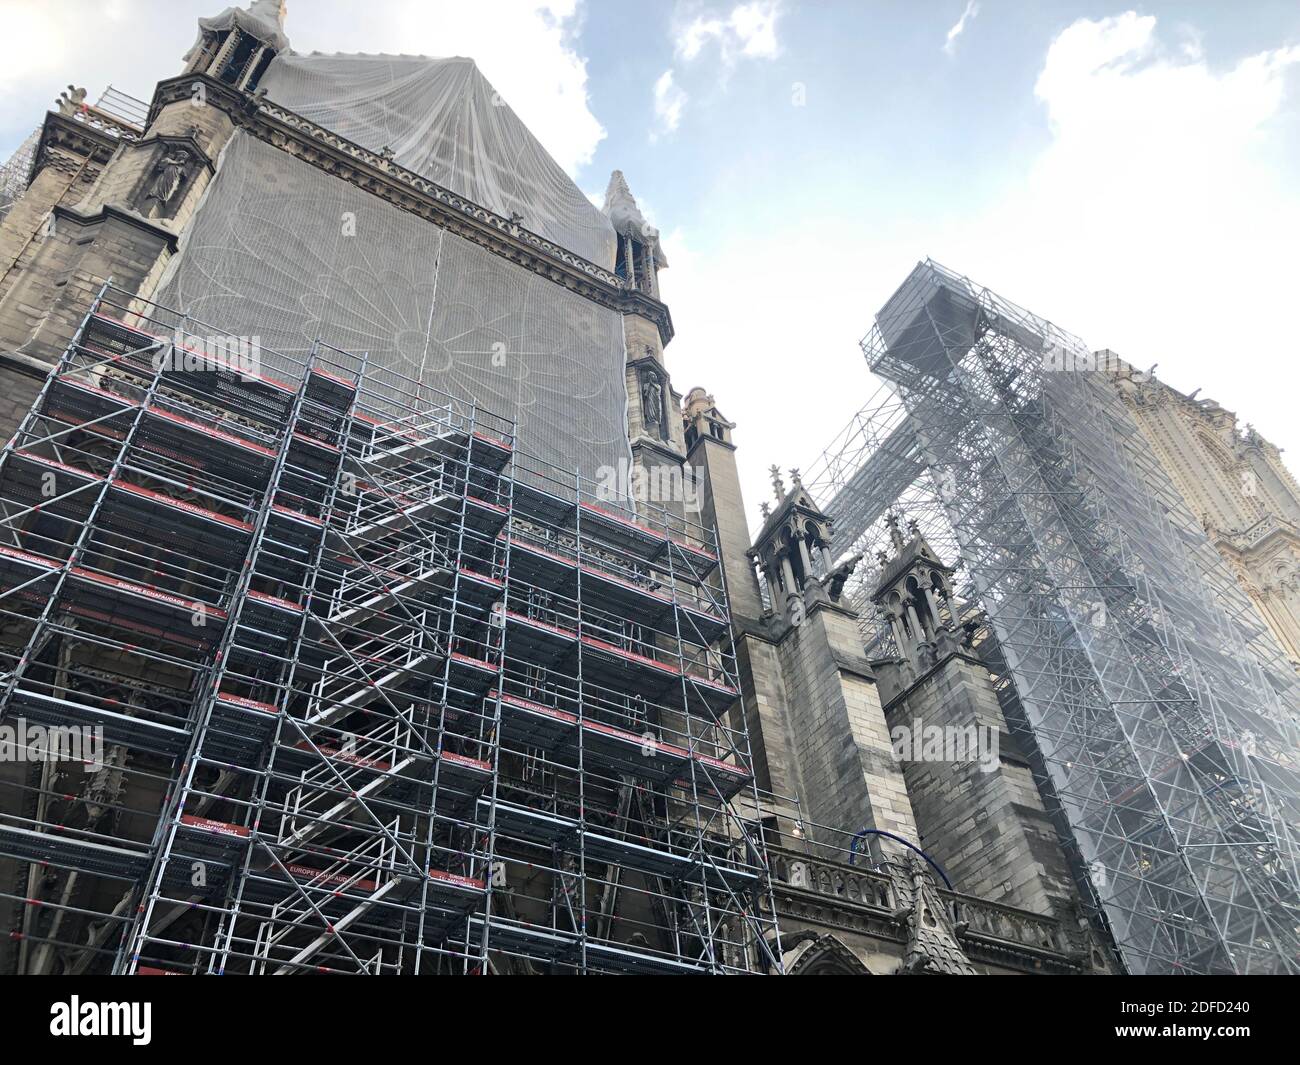 Restoration of notre-dame de paris Stock Photo